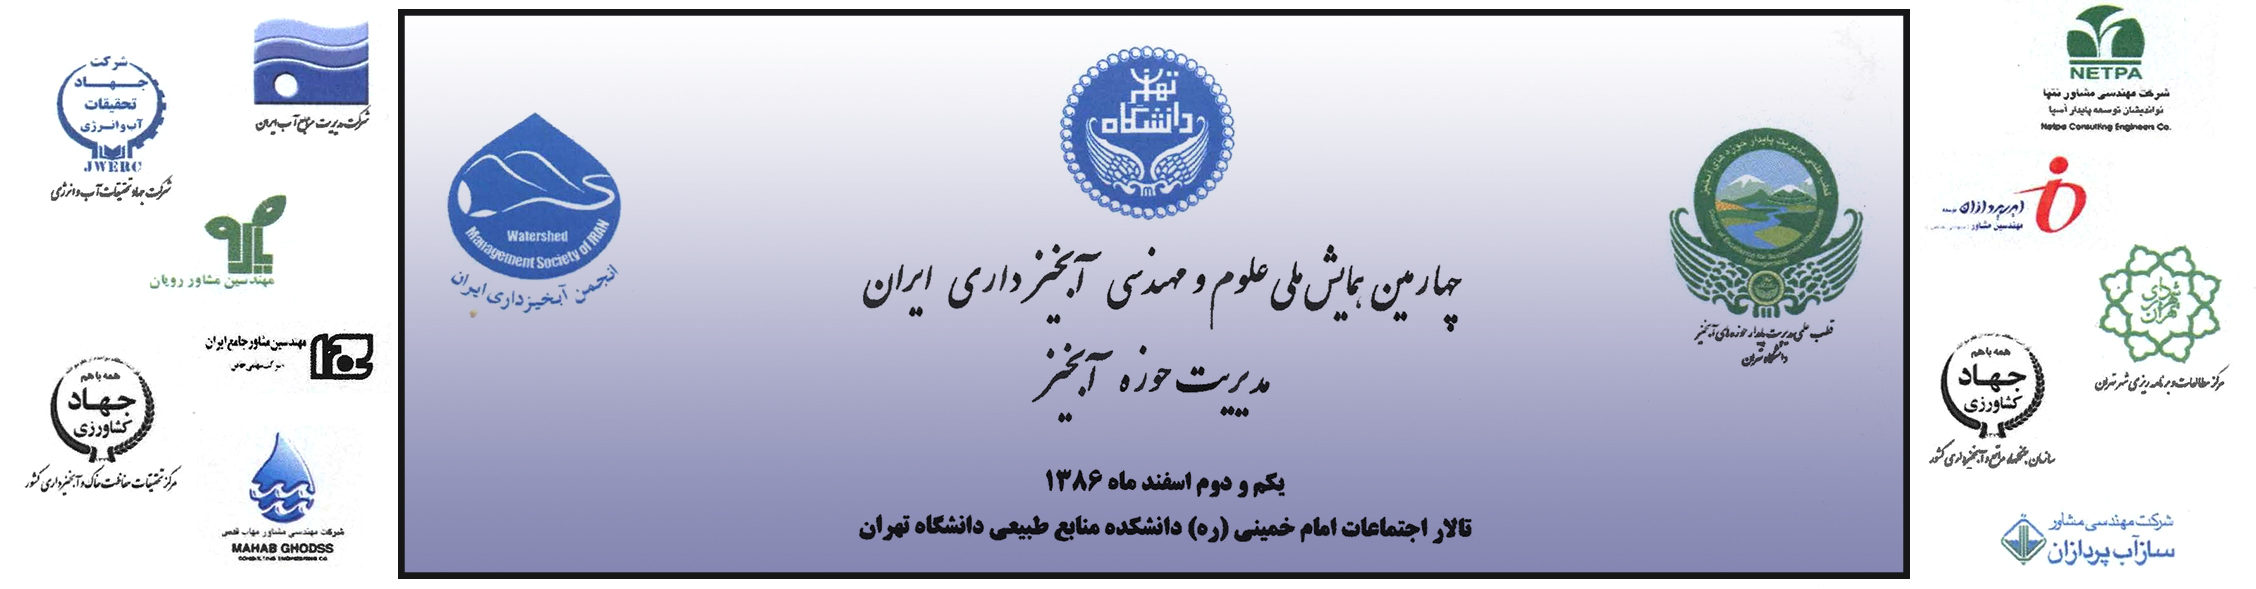 مشارکت-در-برگزاری-کنفرانس-چهارمین-همایش-ملی-علوم-و-مهندسی-آبخیزداری-ایران